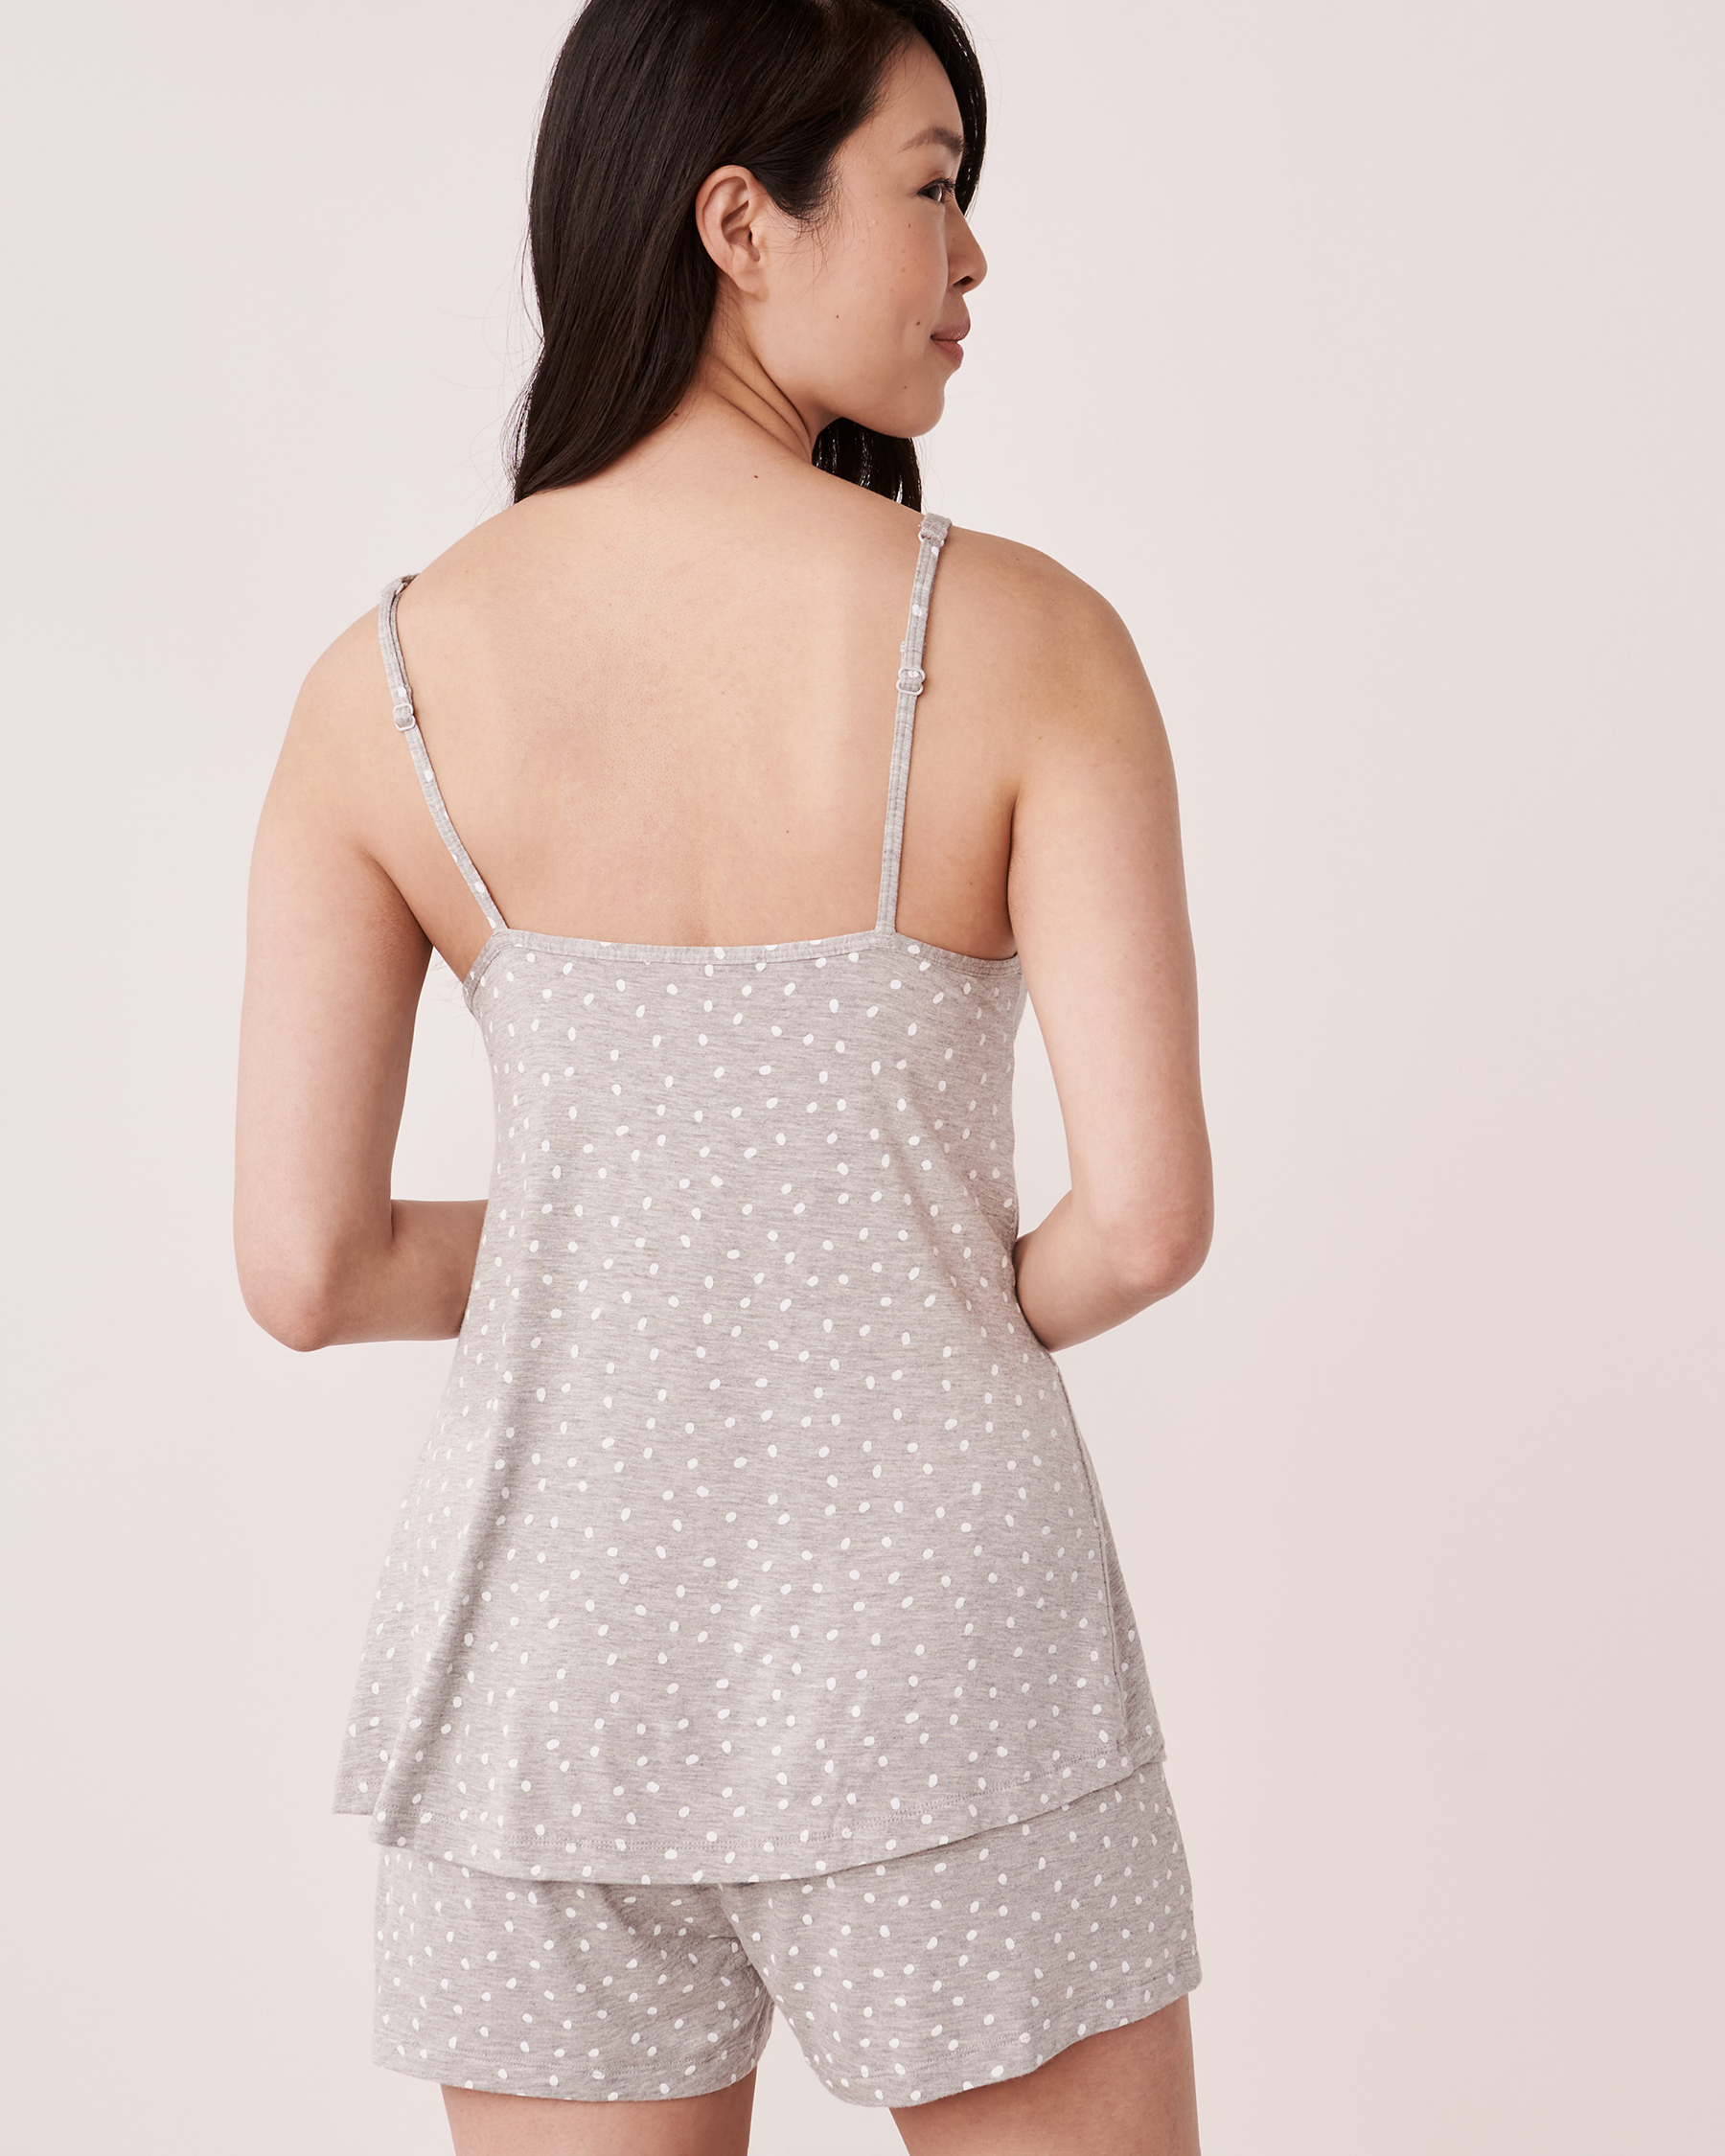 LA VIE EN ROSE Soft Knit Jersey Cami Grey dots 40100298 - View2